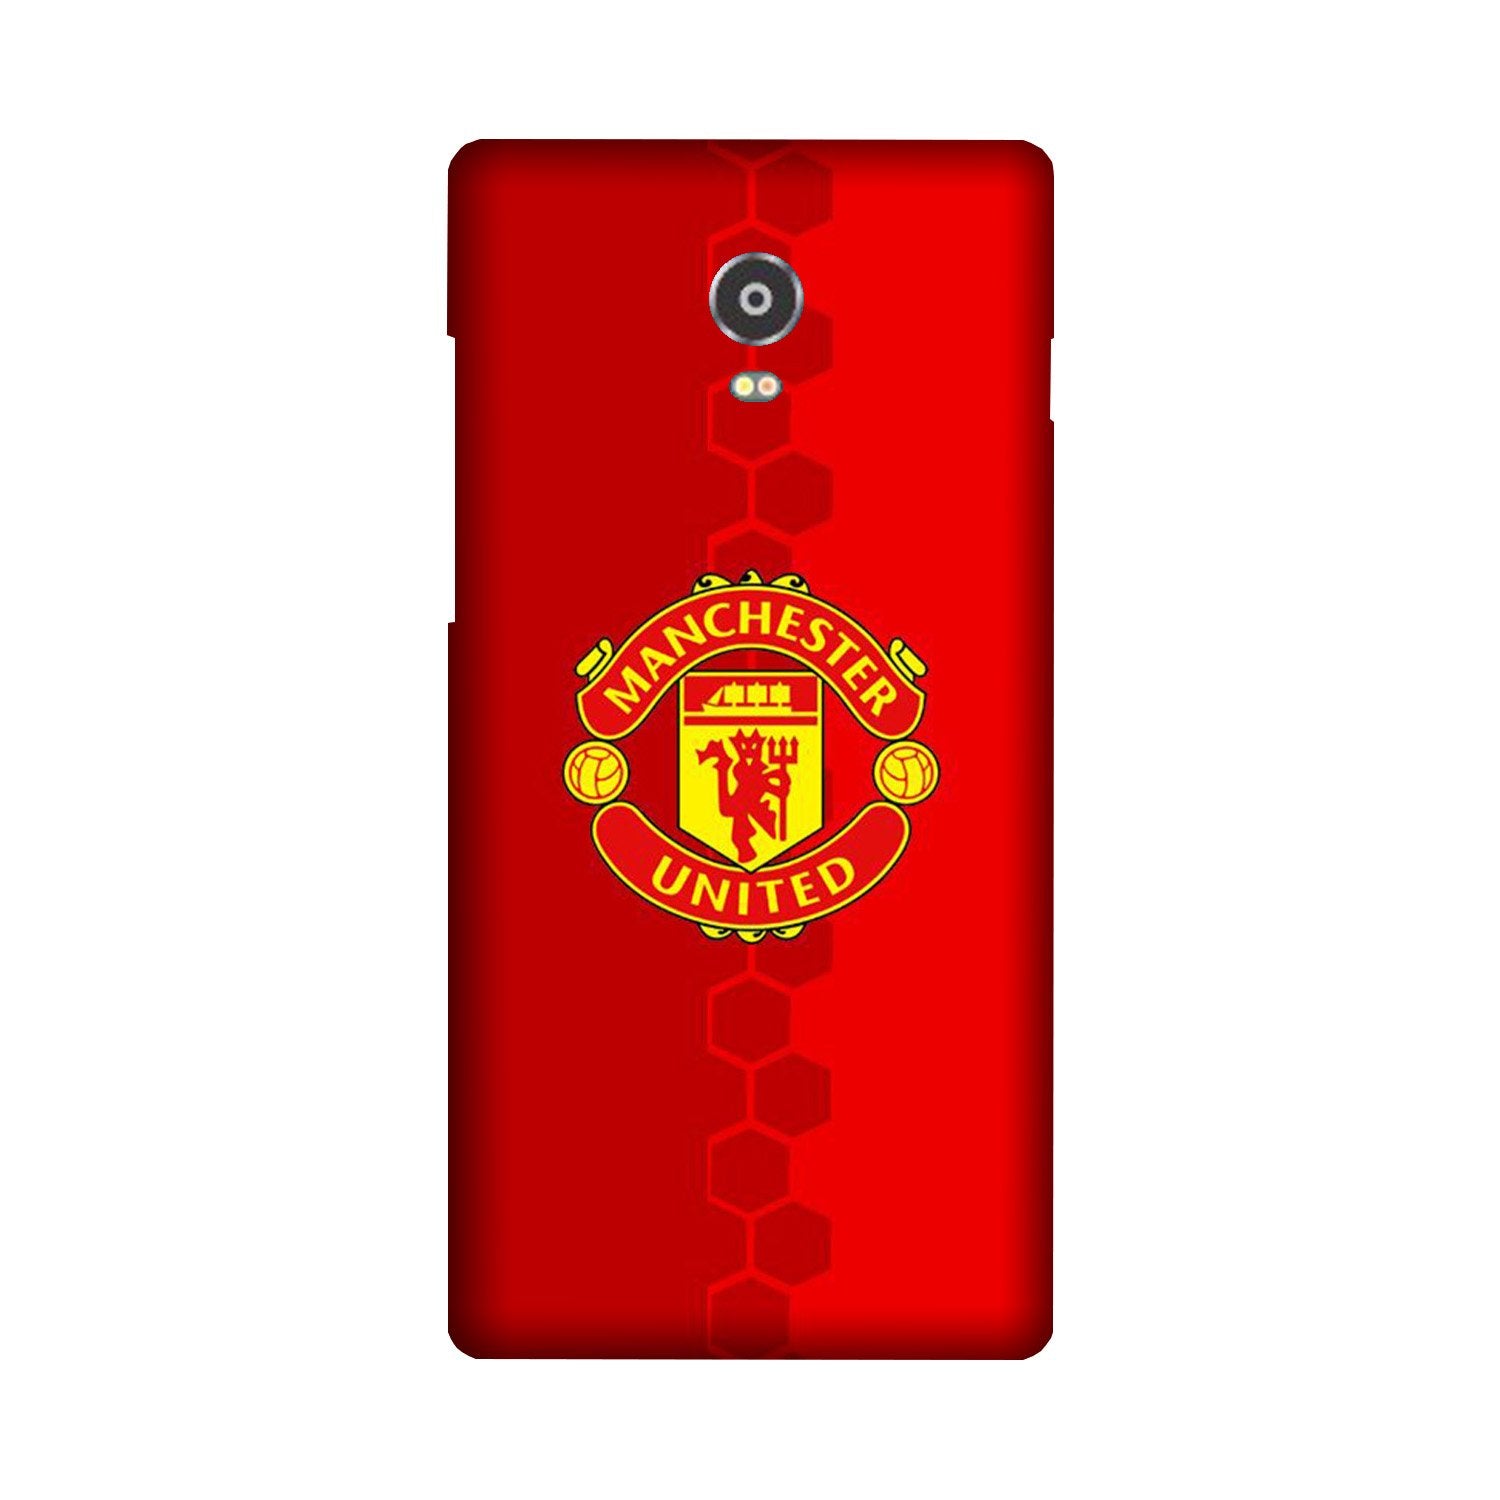 Manchester United Case for Lenovo Vibe P1(Design - 157)